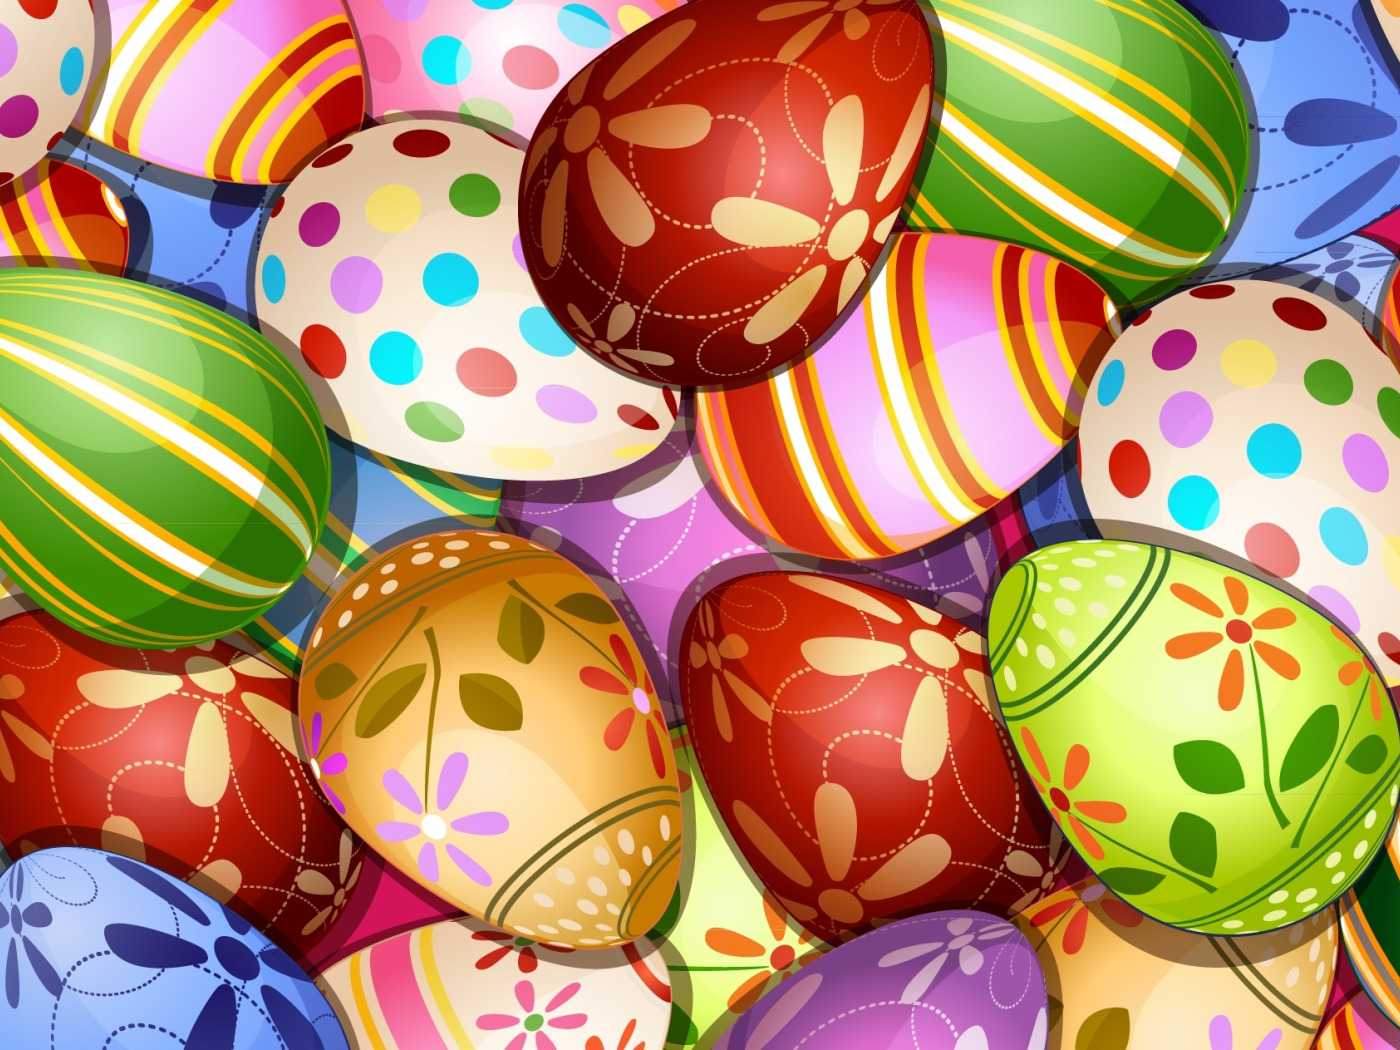 Скачать обои текстура, texture, пасхальные яйца, Easter eggs, раздел тексту...